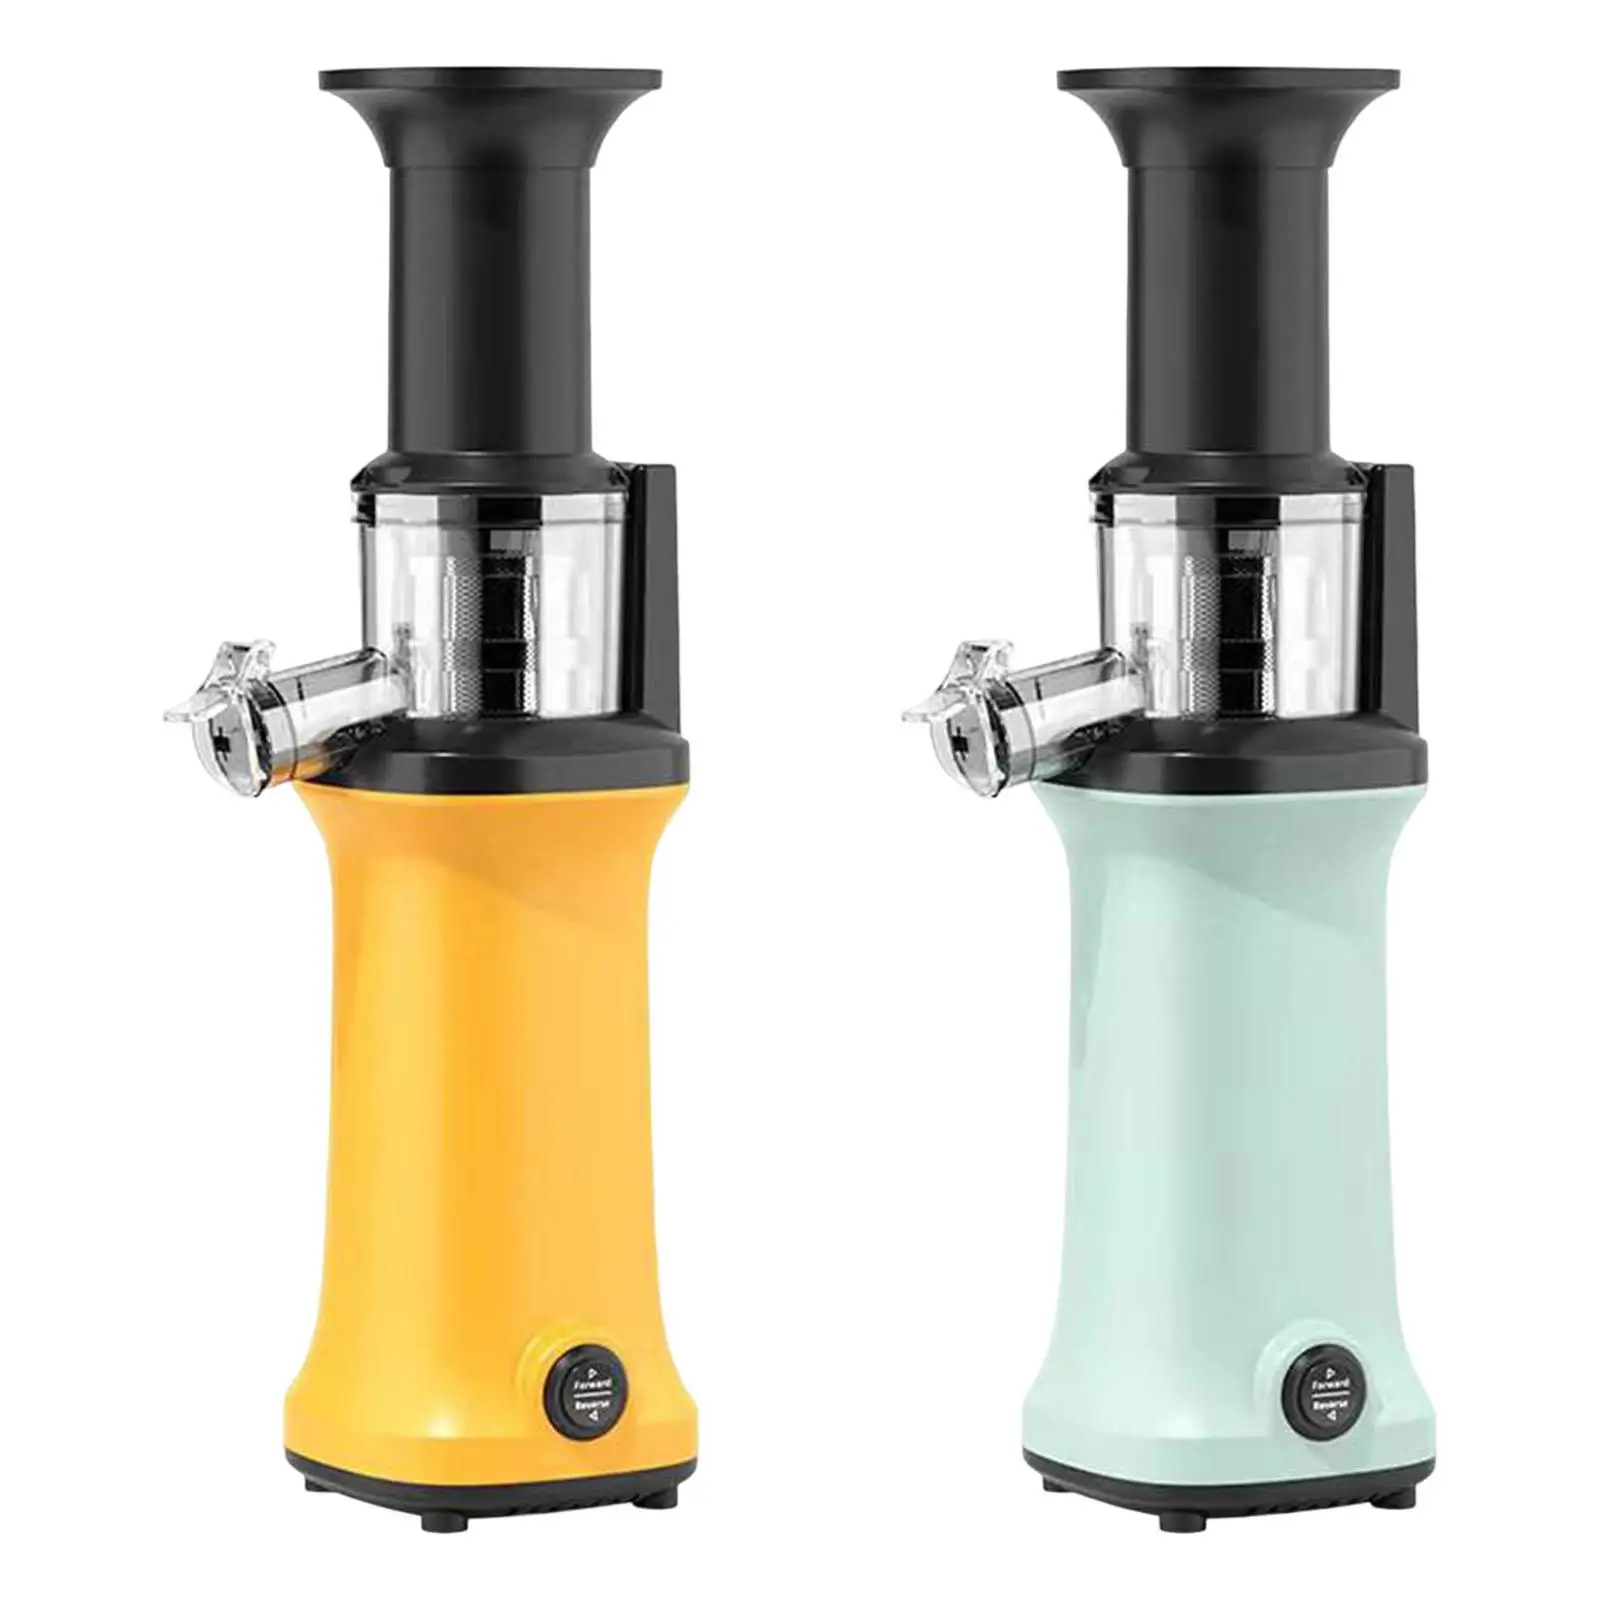 Small juicer Cold Press Juicer Machine Masticating Juicer for Ginger Celery